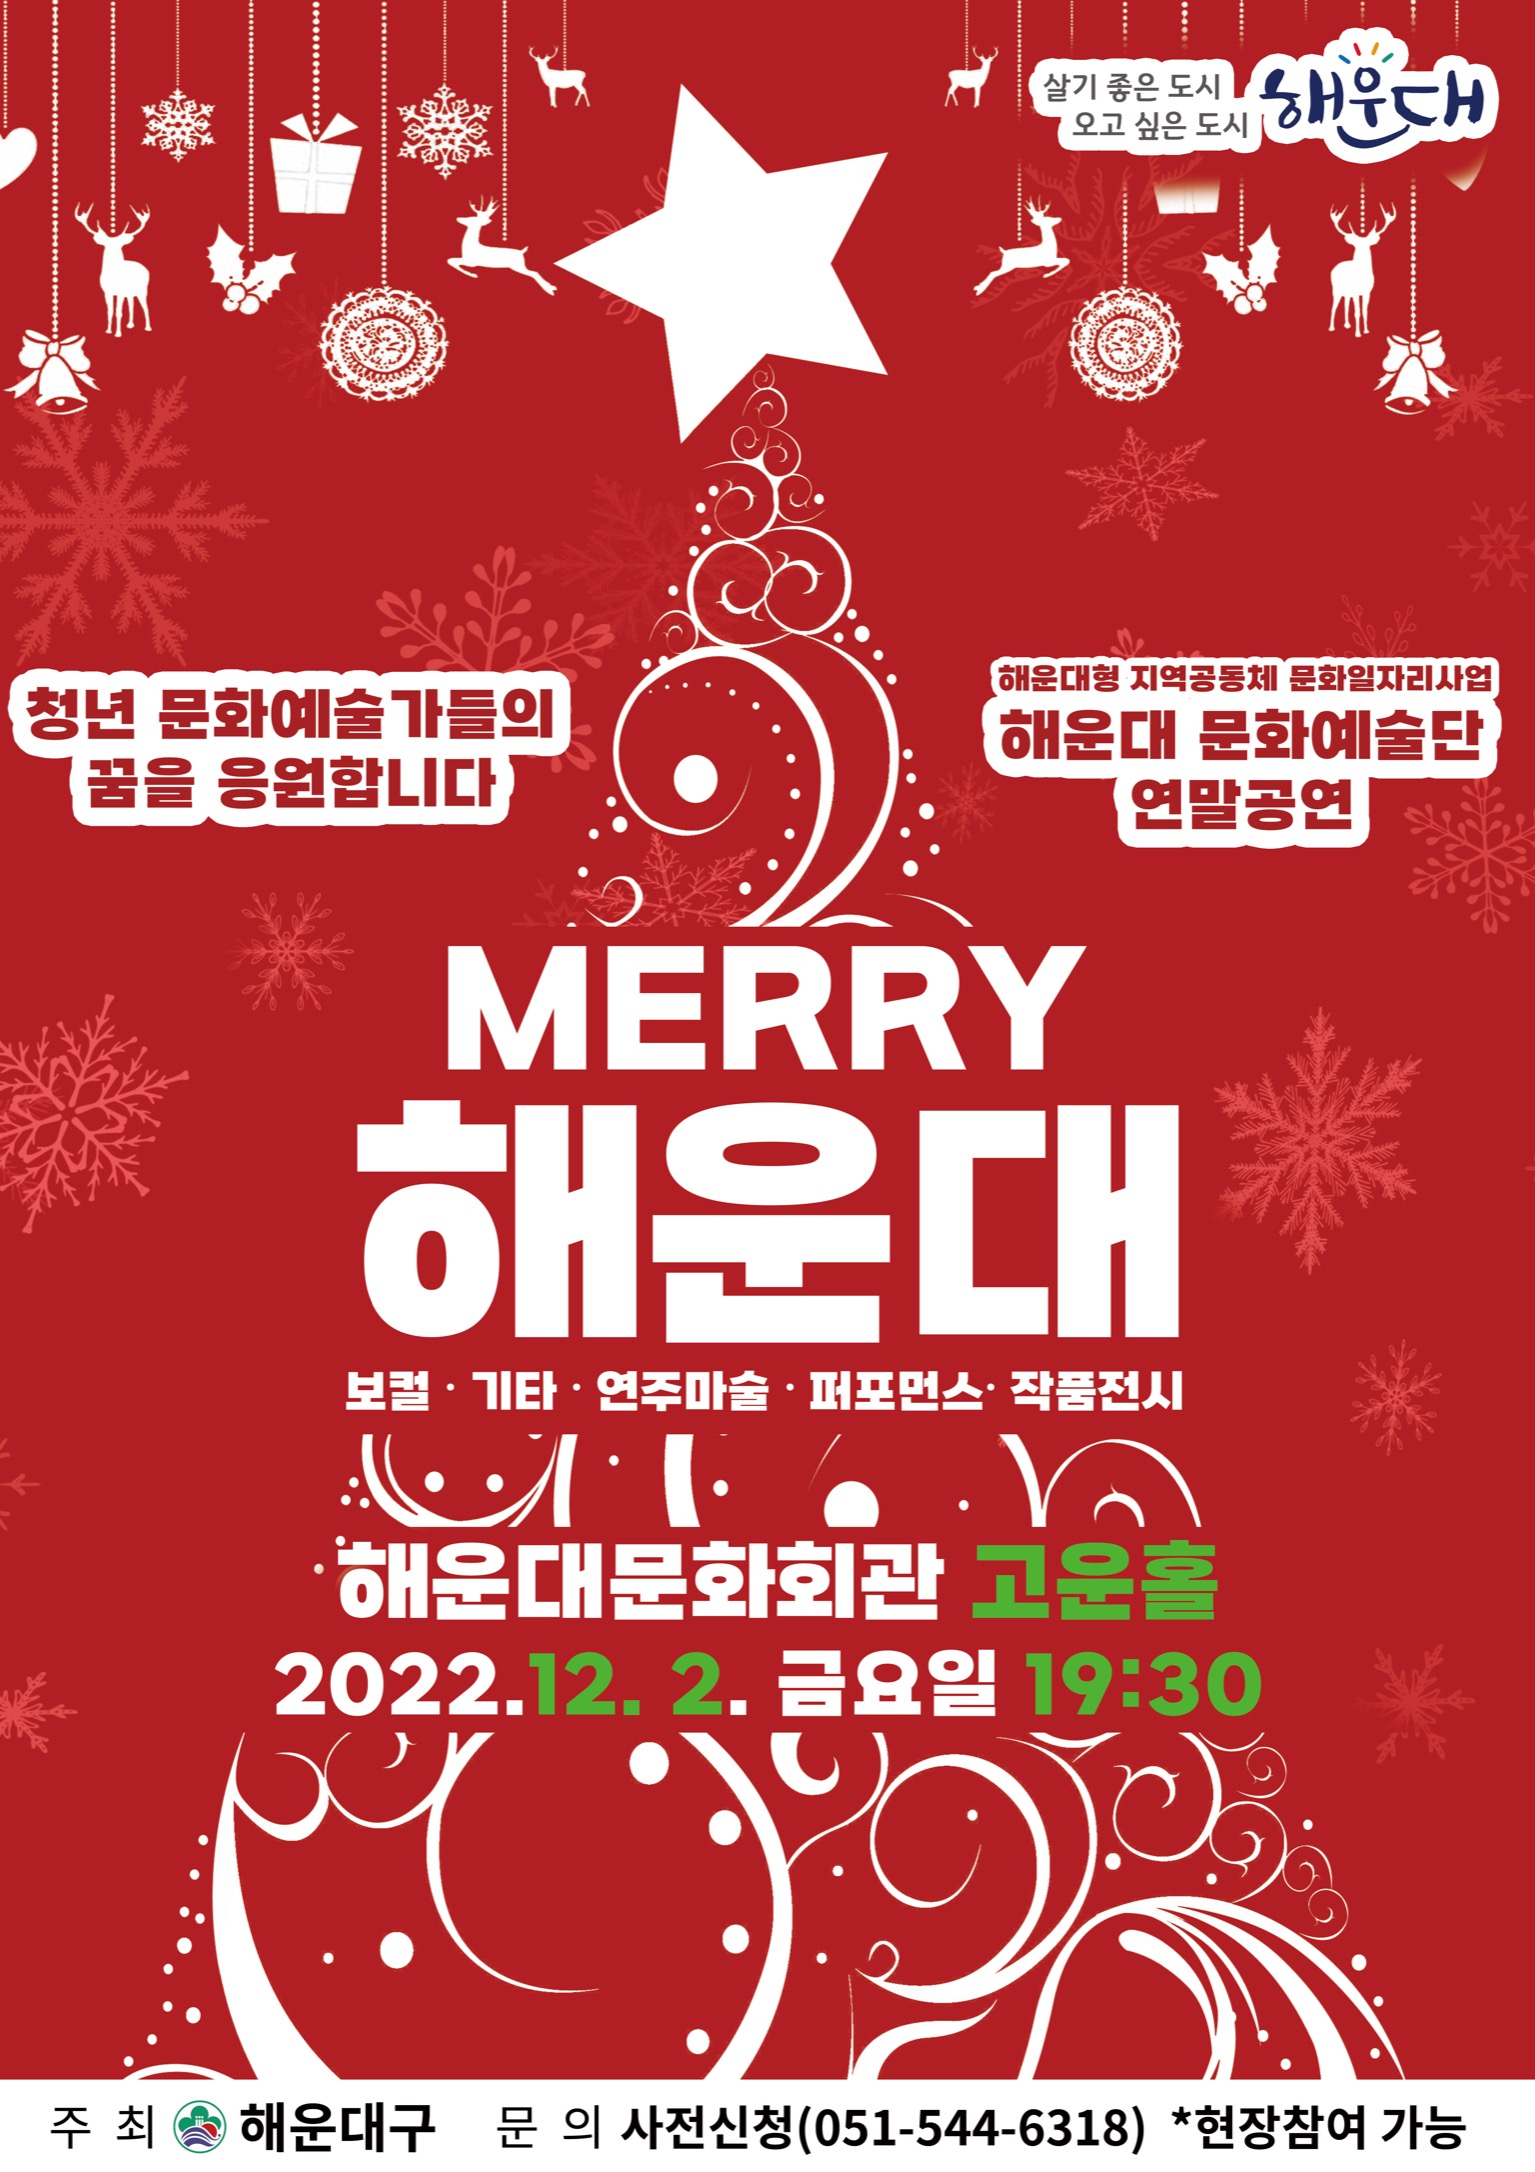 해운대문화예술단 연말공연 “Merry 해운대” 개최 알림 1번째 이미지